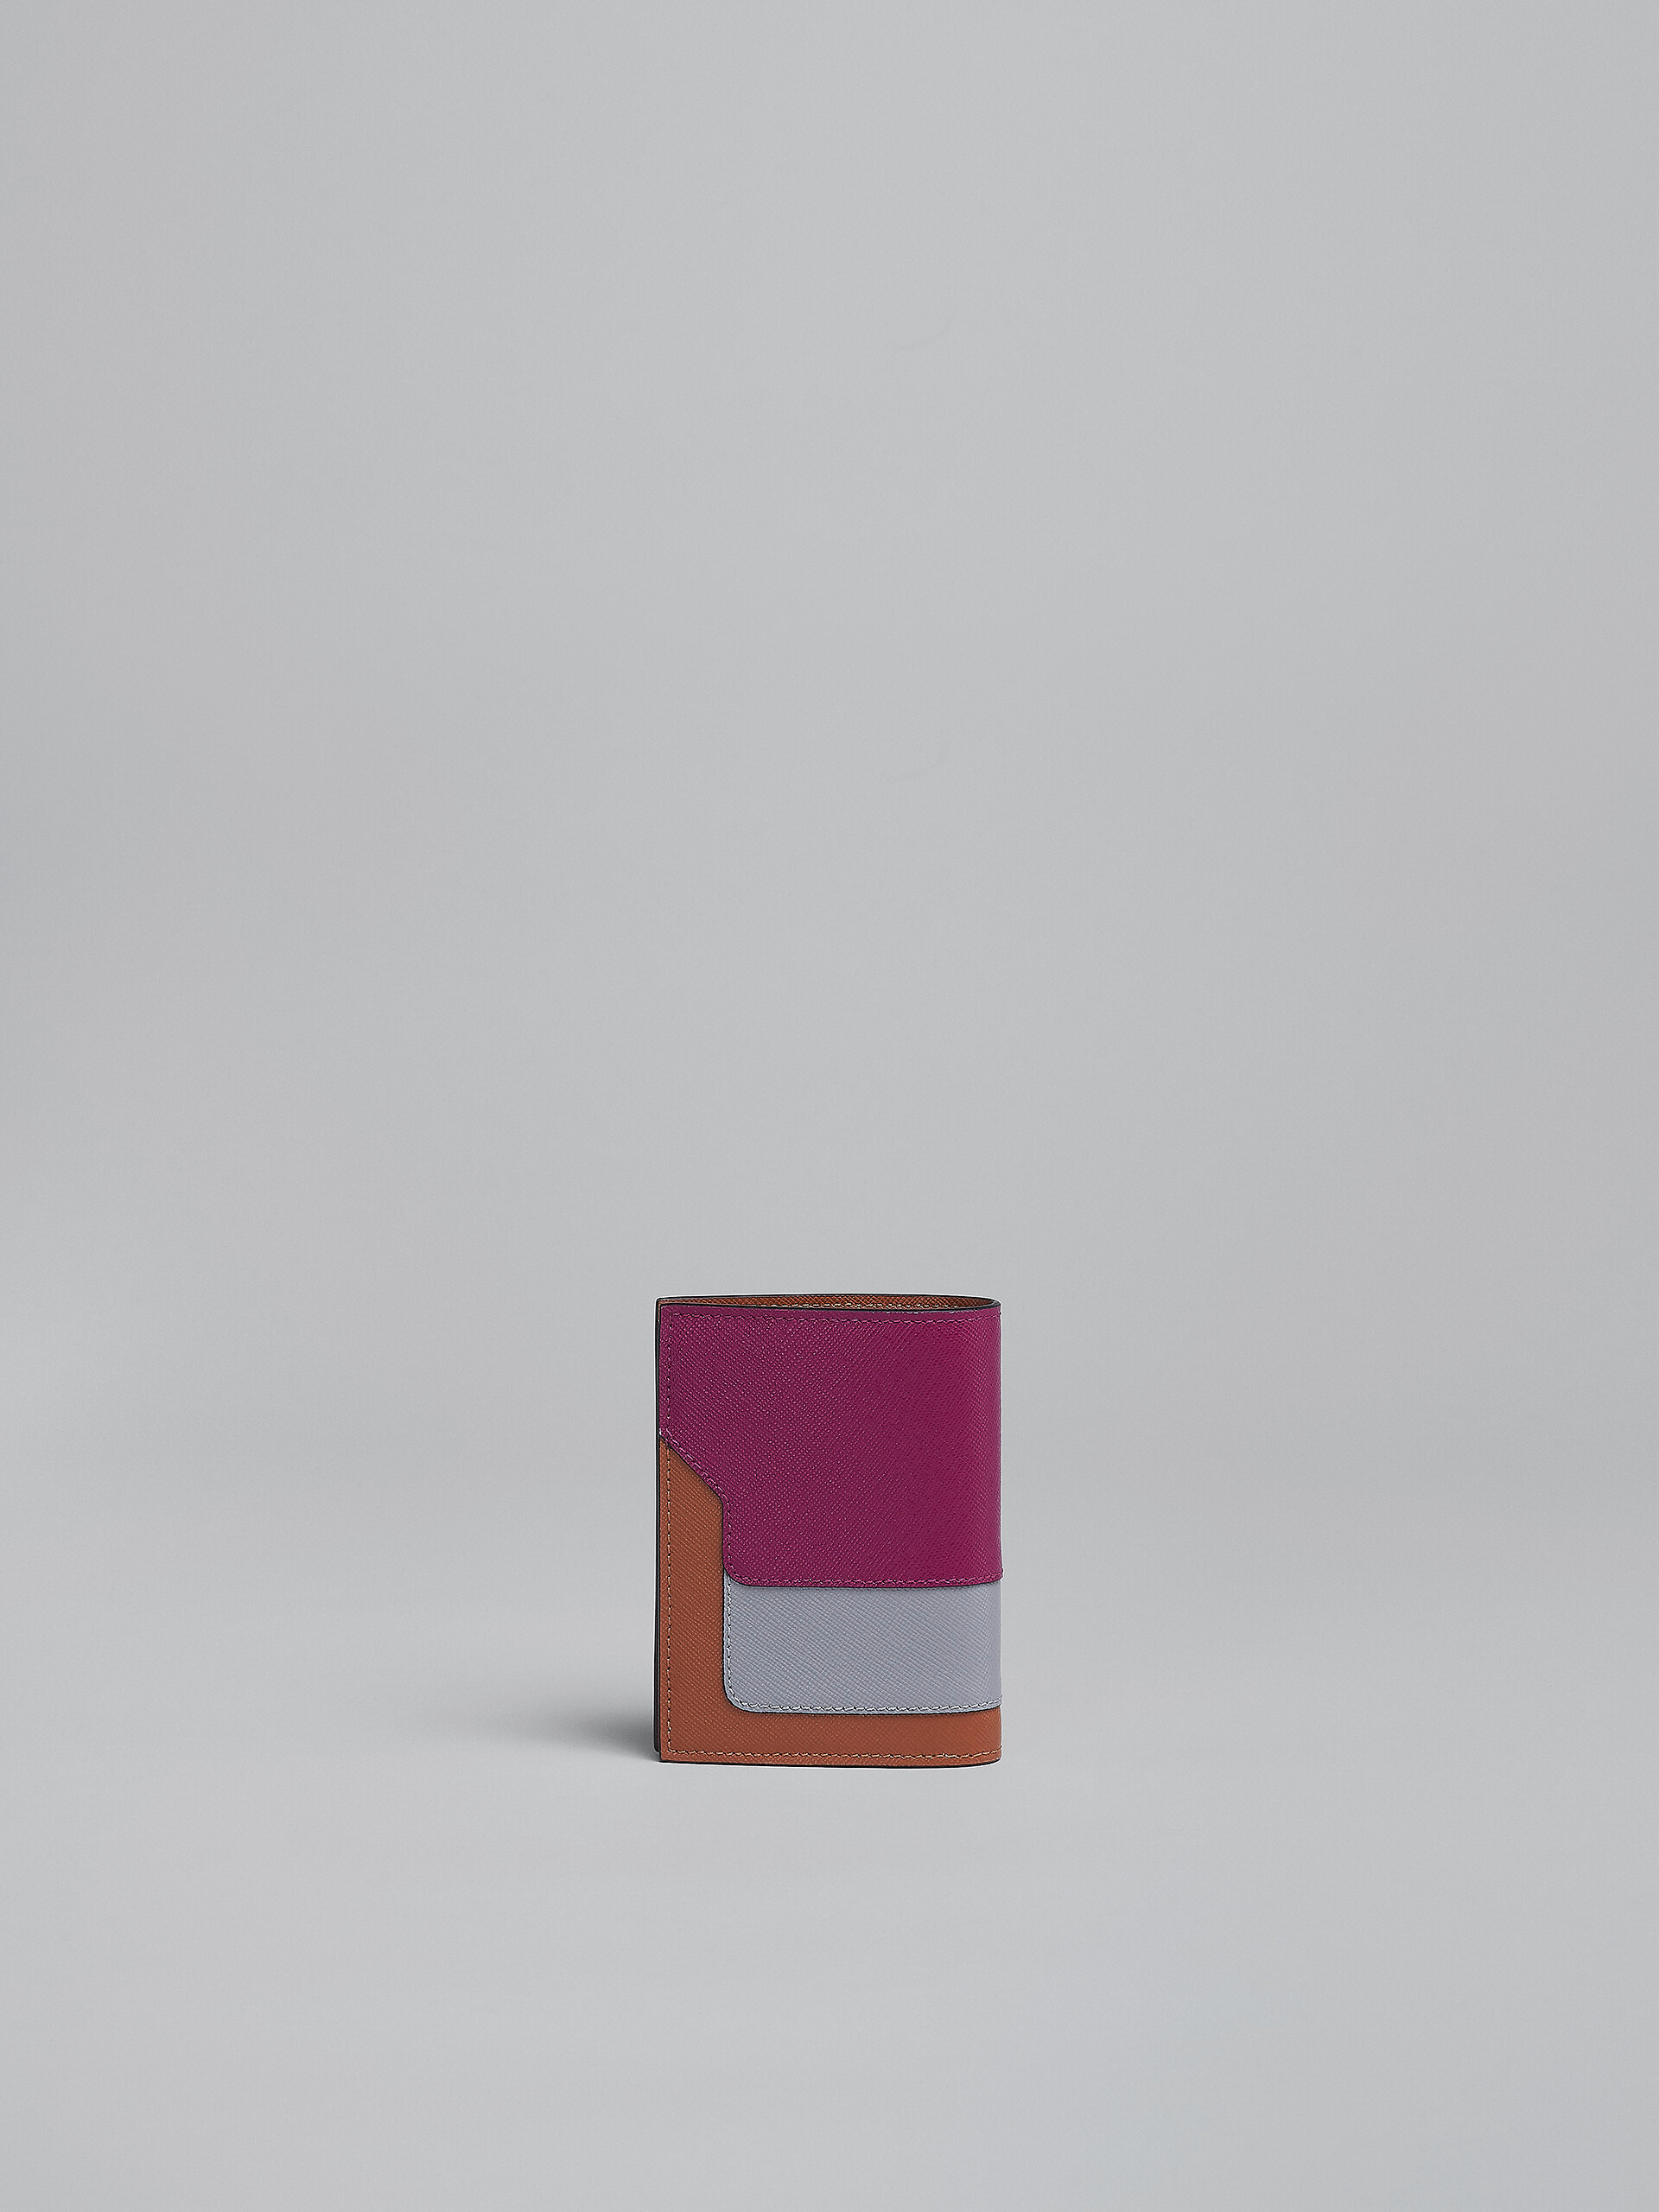 Zweifache Faltbrieftasche aus Saffiano-Leder in Violett, Grau und Braun - Brieftaschen - Image 3